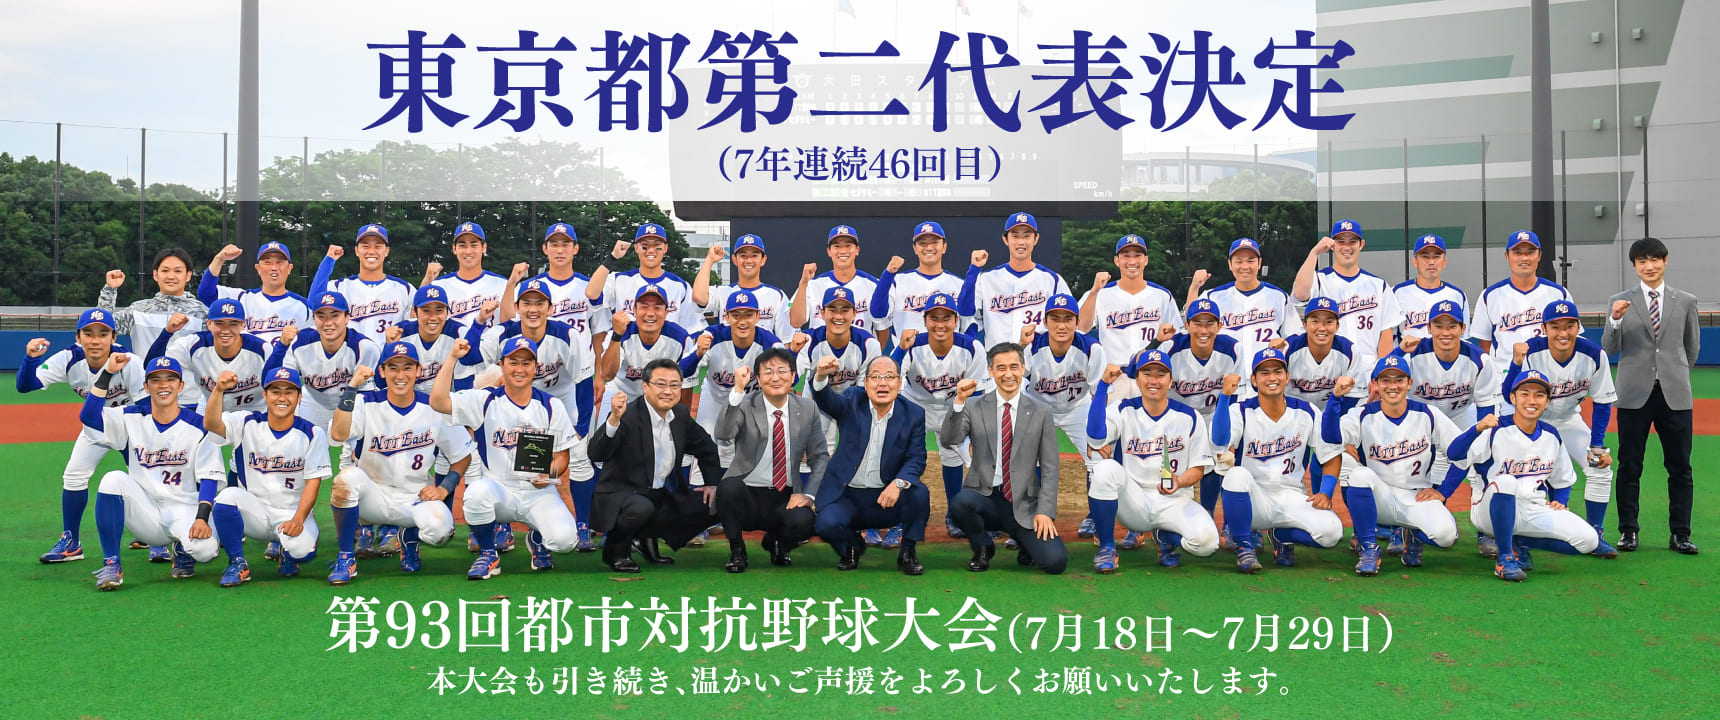 第93回 都市対抗野球大会 東京都代表決定戦